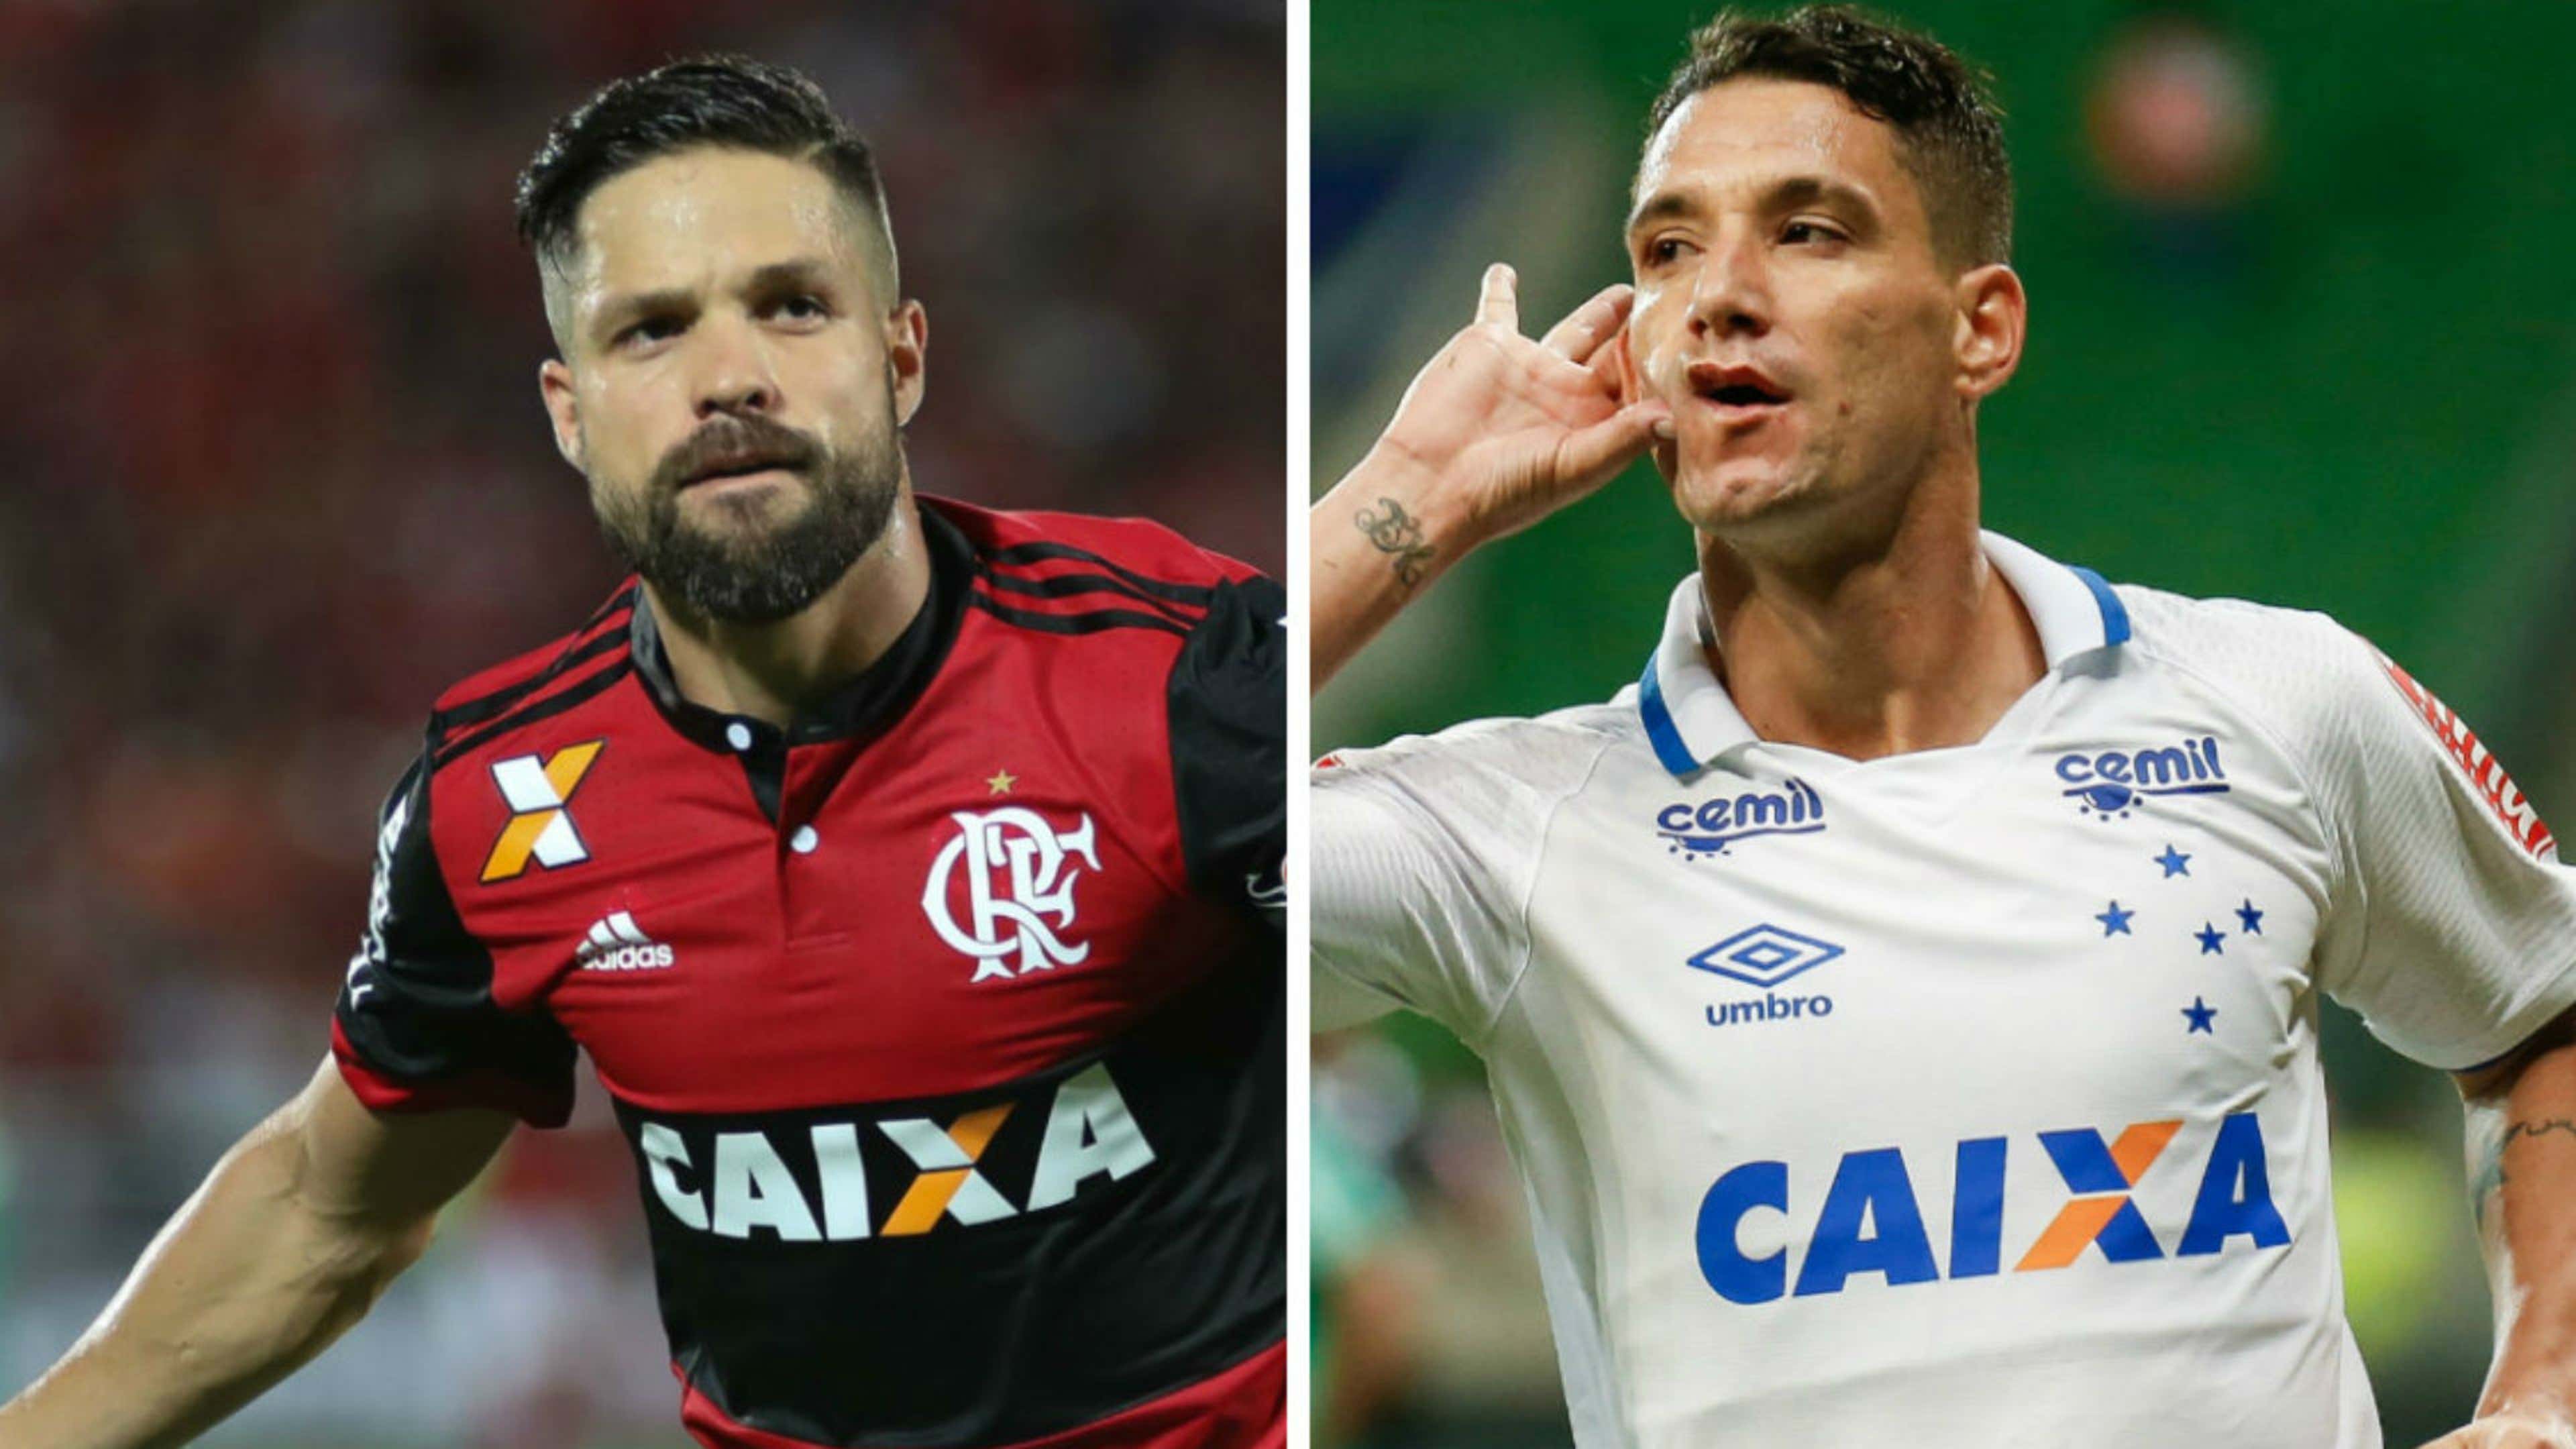 PRÉVIA: Cruzeiro x Vasco; confira análise e principais estatísticas